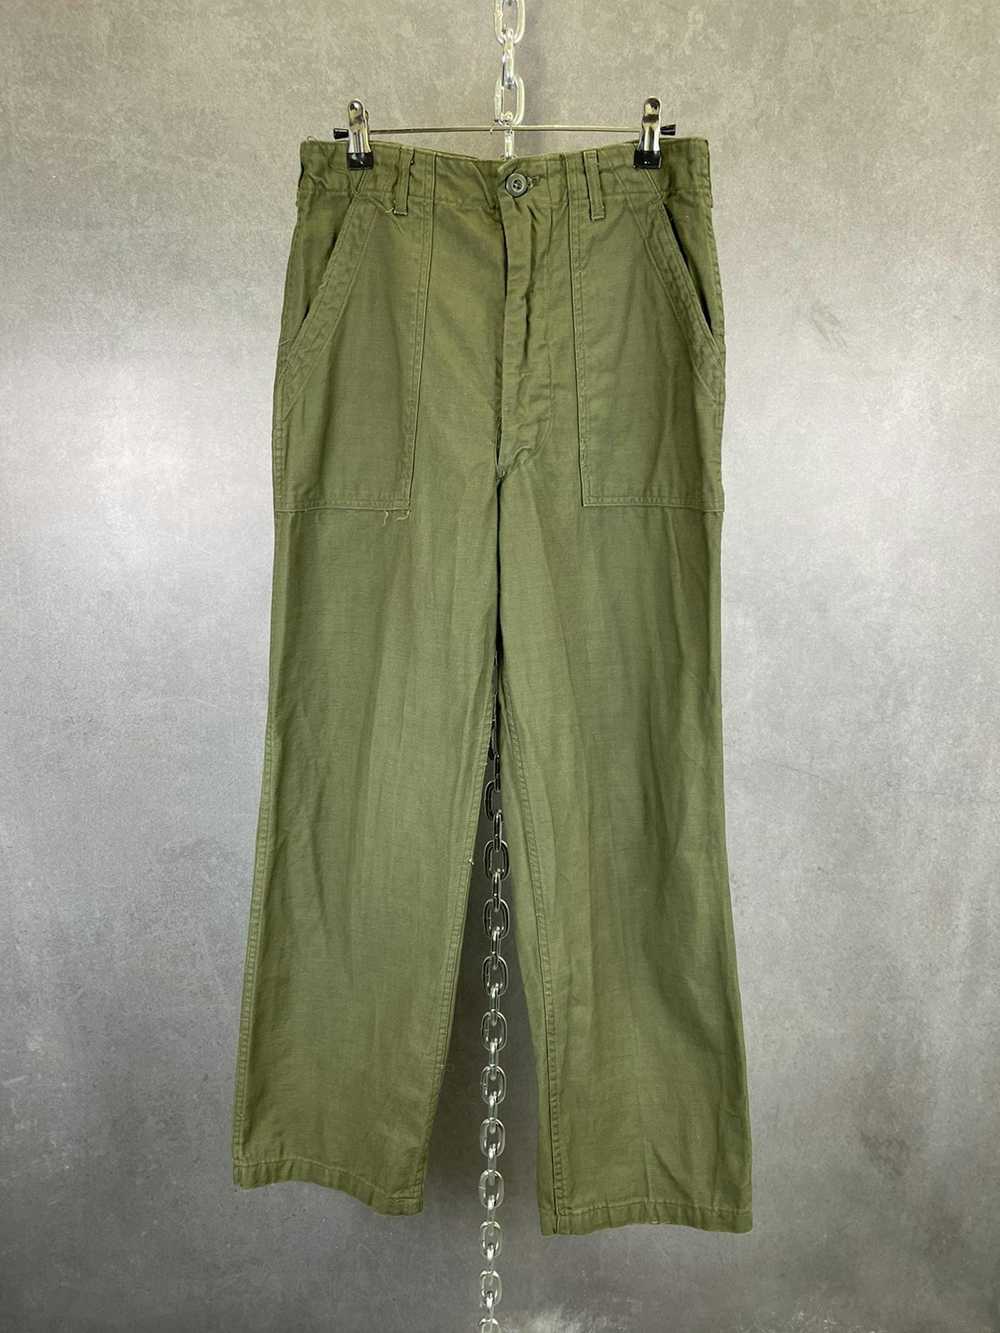 Vintage Vintage Military OG-107 Fatigue Pants Cot… - image 1